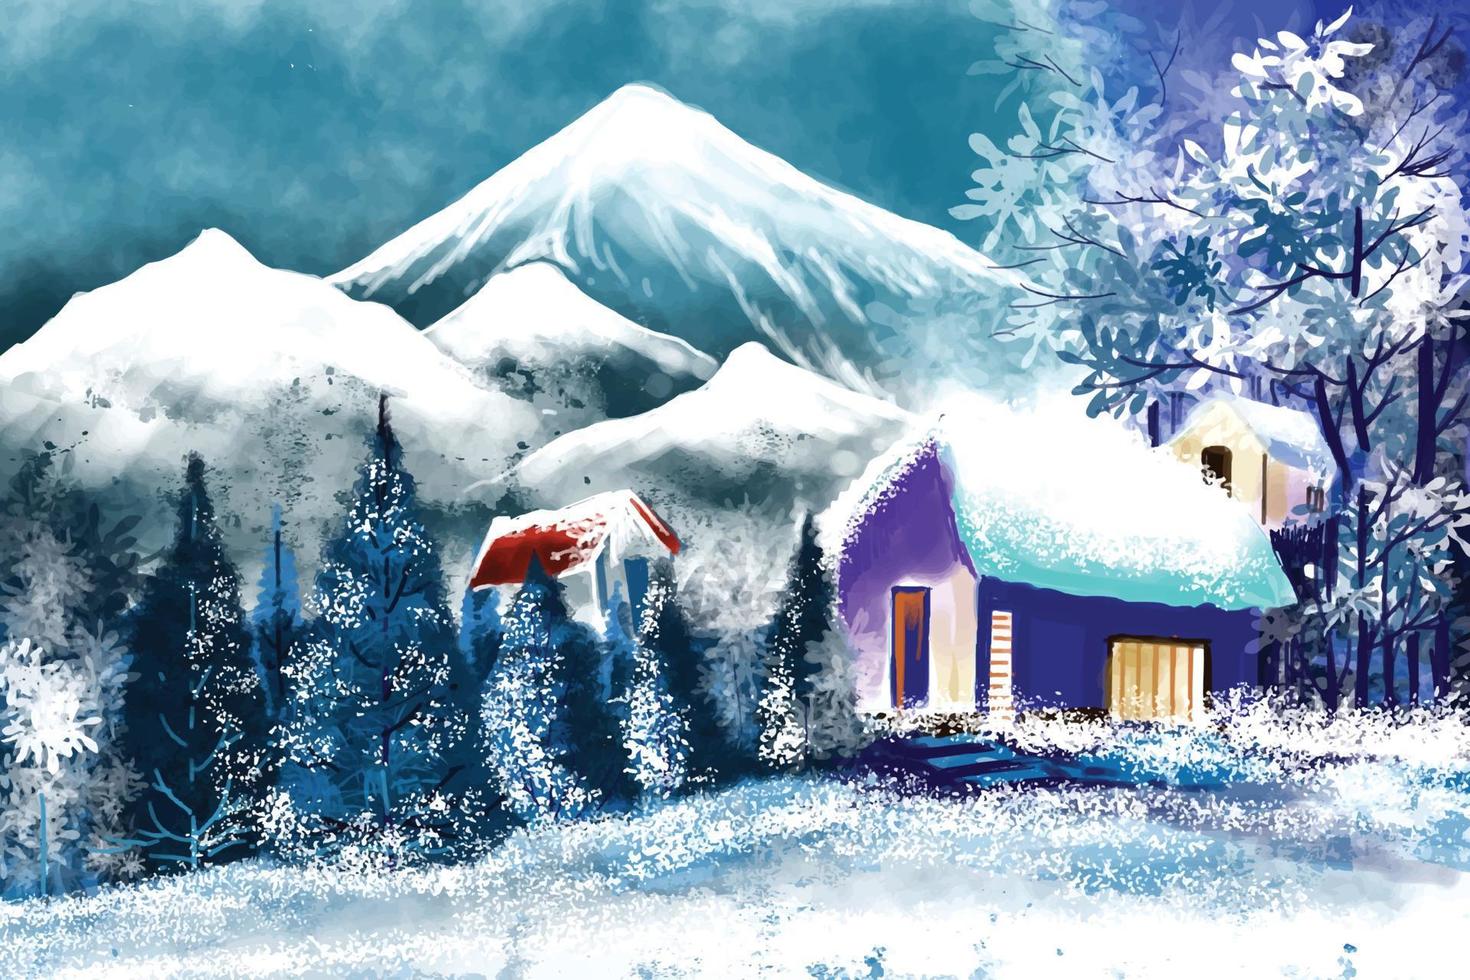 Winterhintergrund der Schnee- und Hausweihnachtsbaumkarten-Landschaftsgestaltung vektor